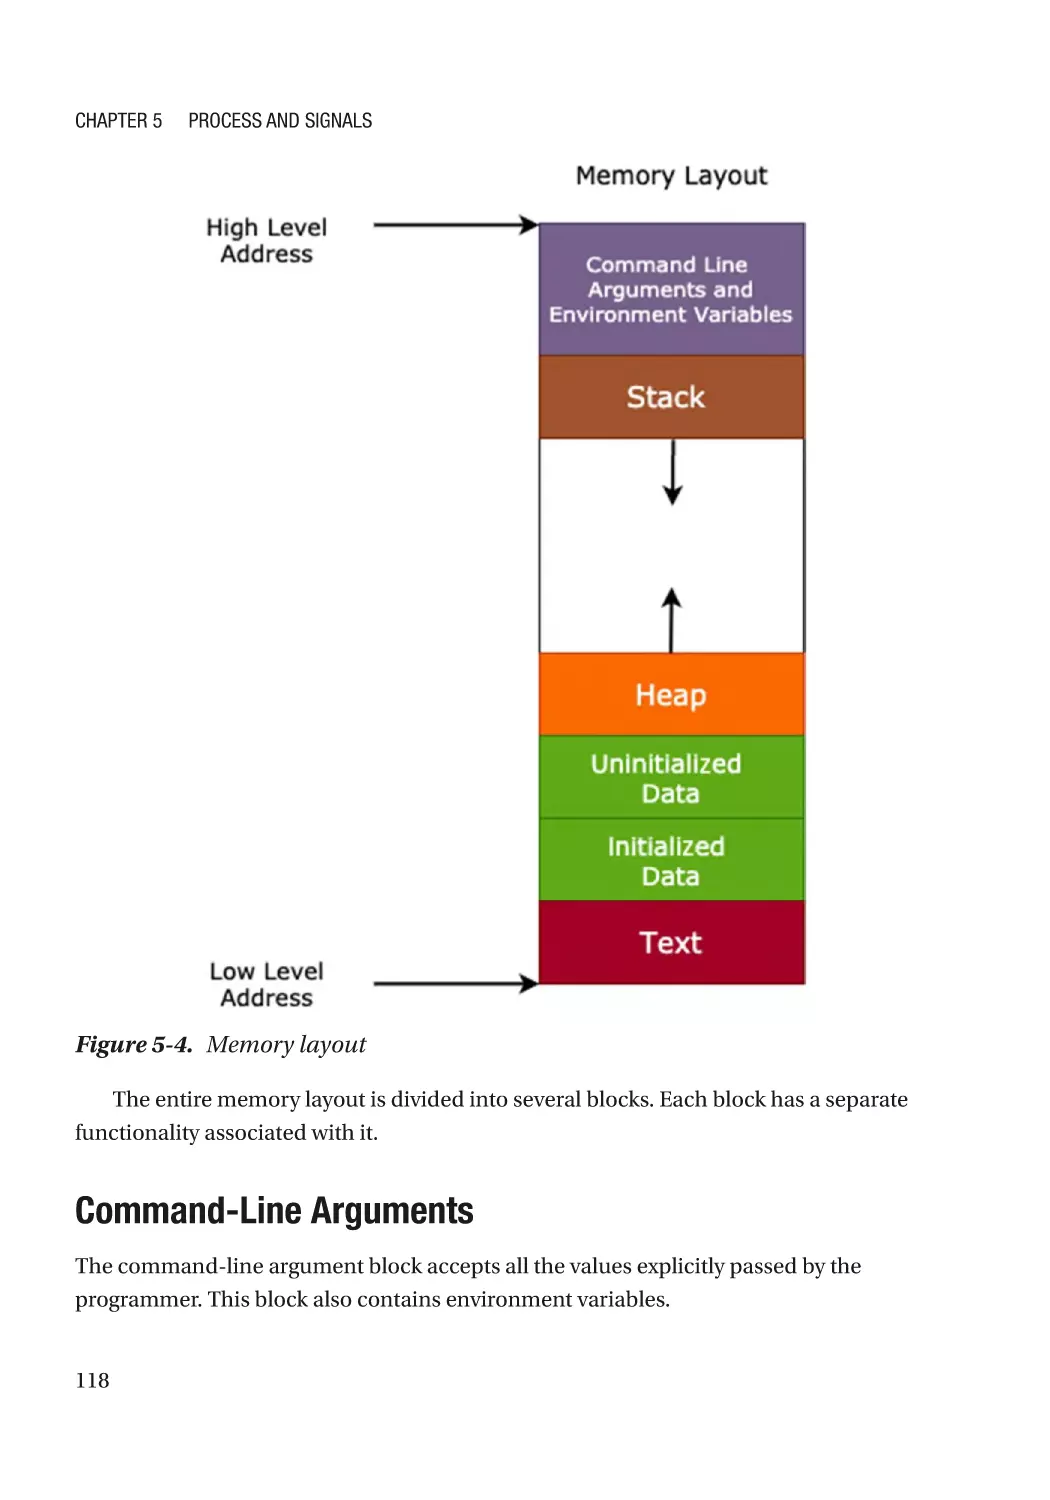 Command-Line Arguments